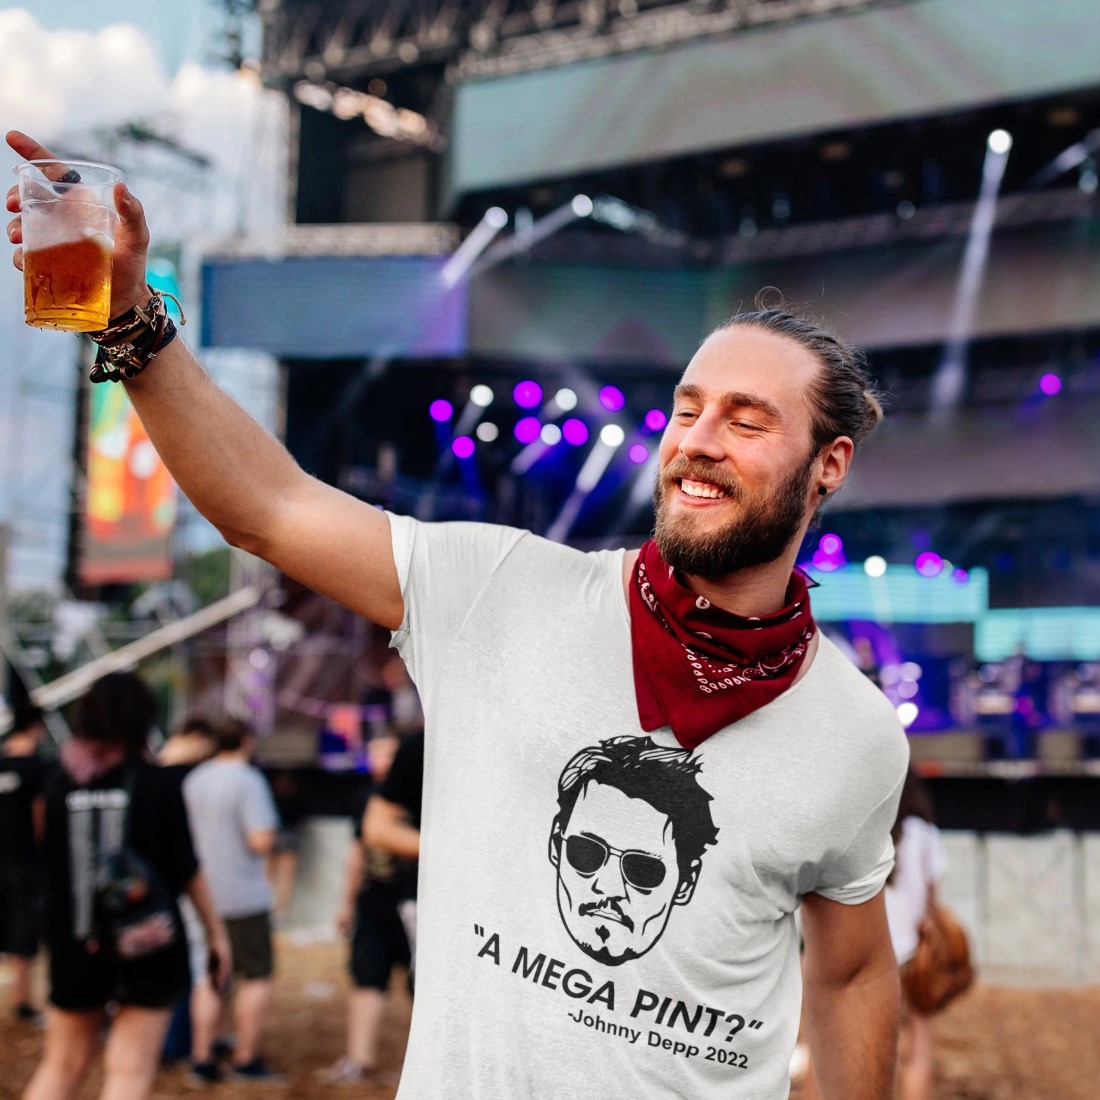 A Mega Pint Johnny Depp wins trial 2022 Cheer T-Shirt